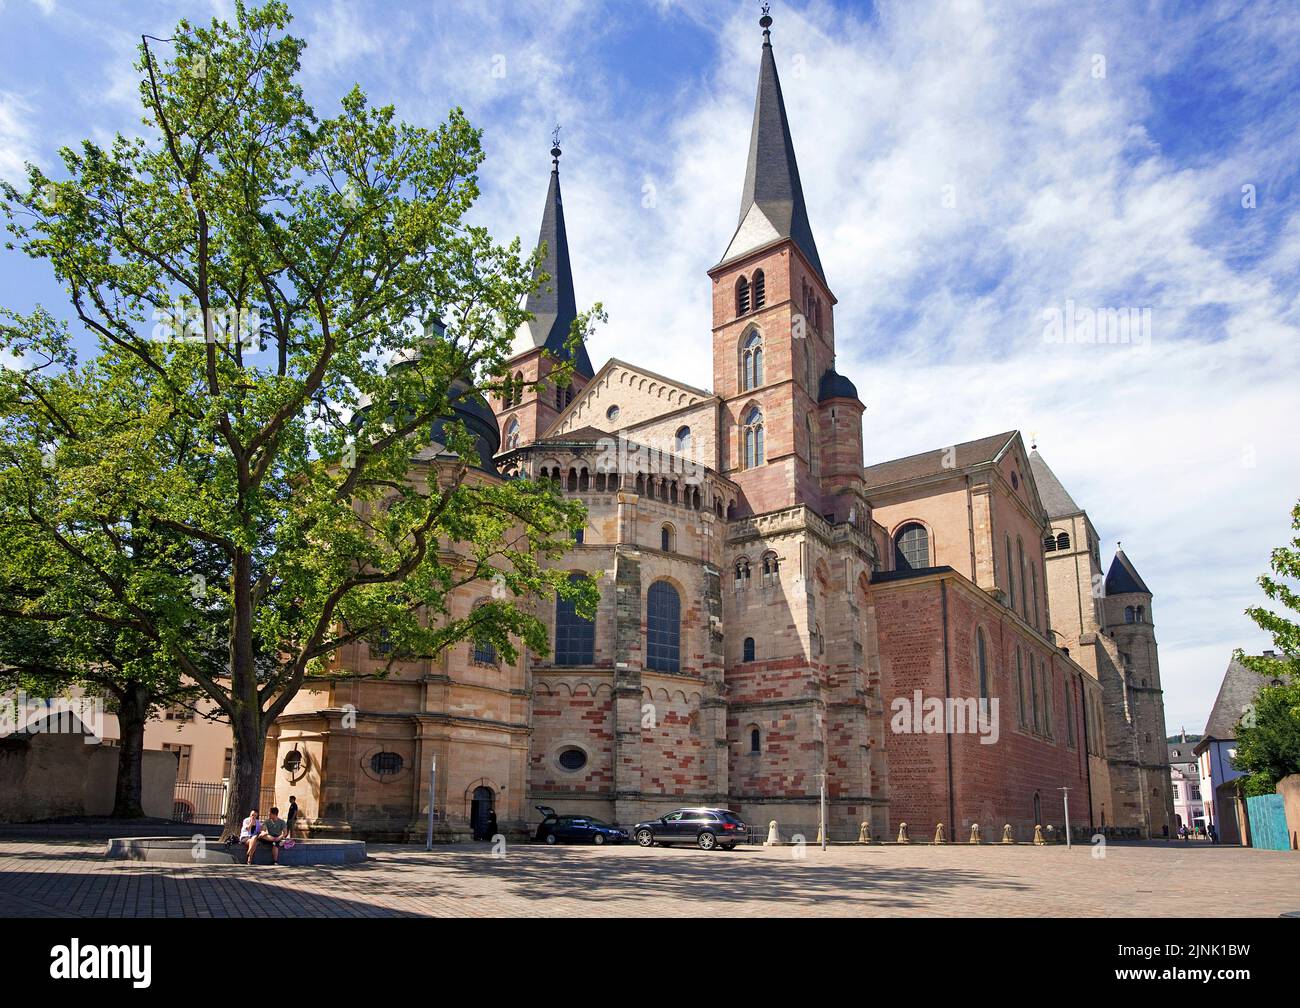 Cathédrale de Trèves, Saint-Pierre, dôme, site du patrimoine mondial de l'UNESCO, Trèves, Rhénanie-Palatinat, Allemagne, Europe Banque D'Images